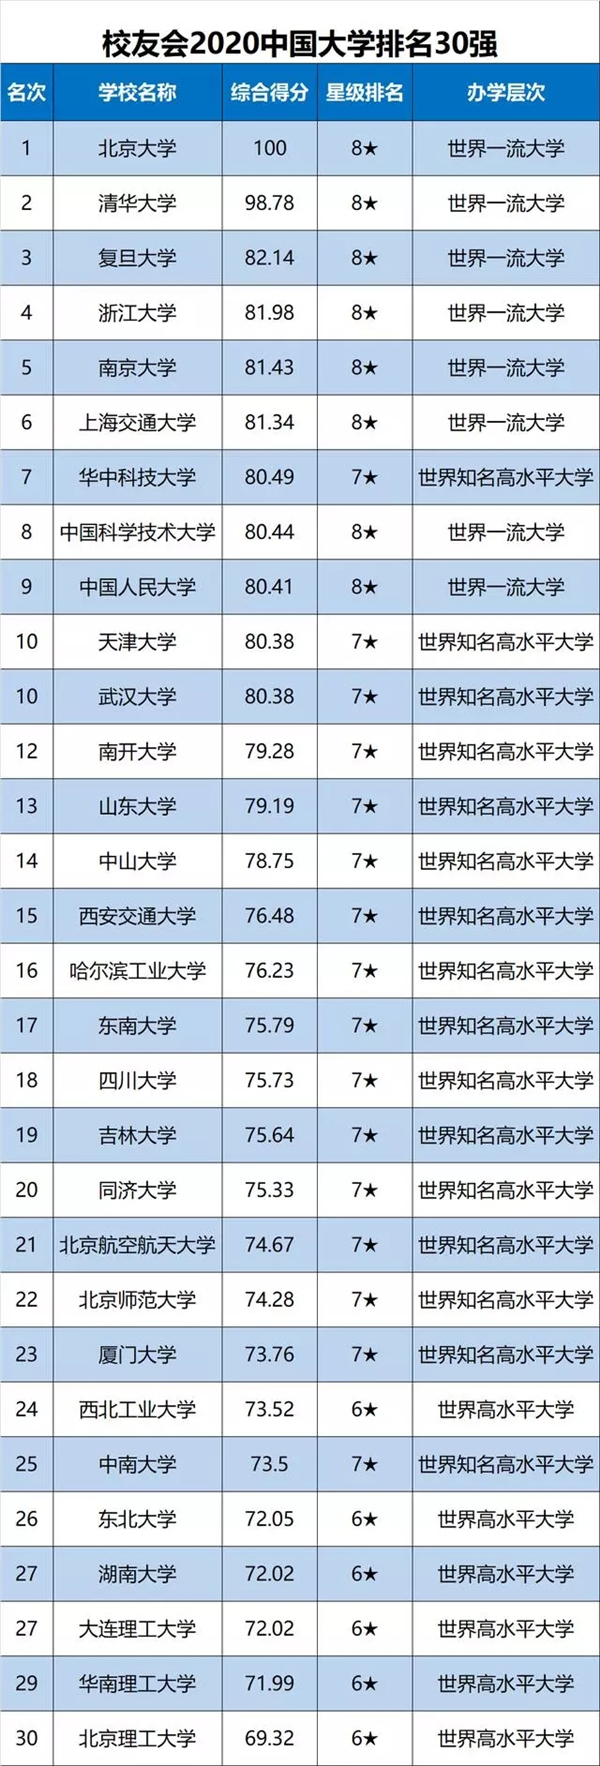 中国大学排名发布 天津大学跻身全国前10强